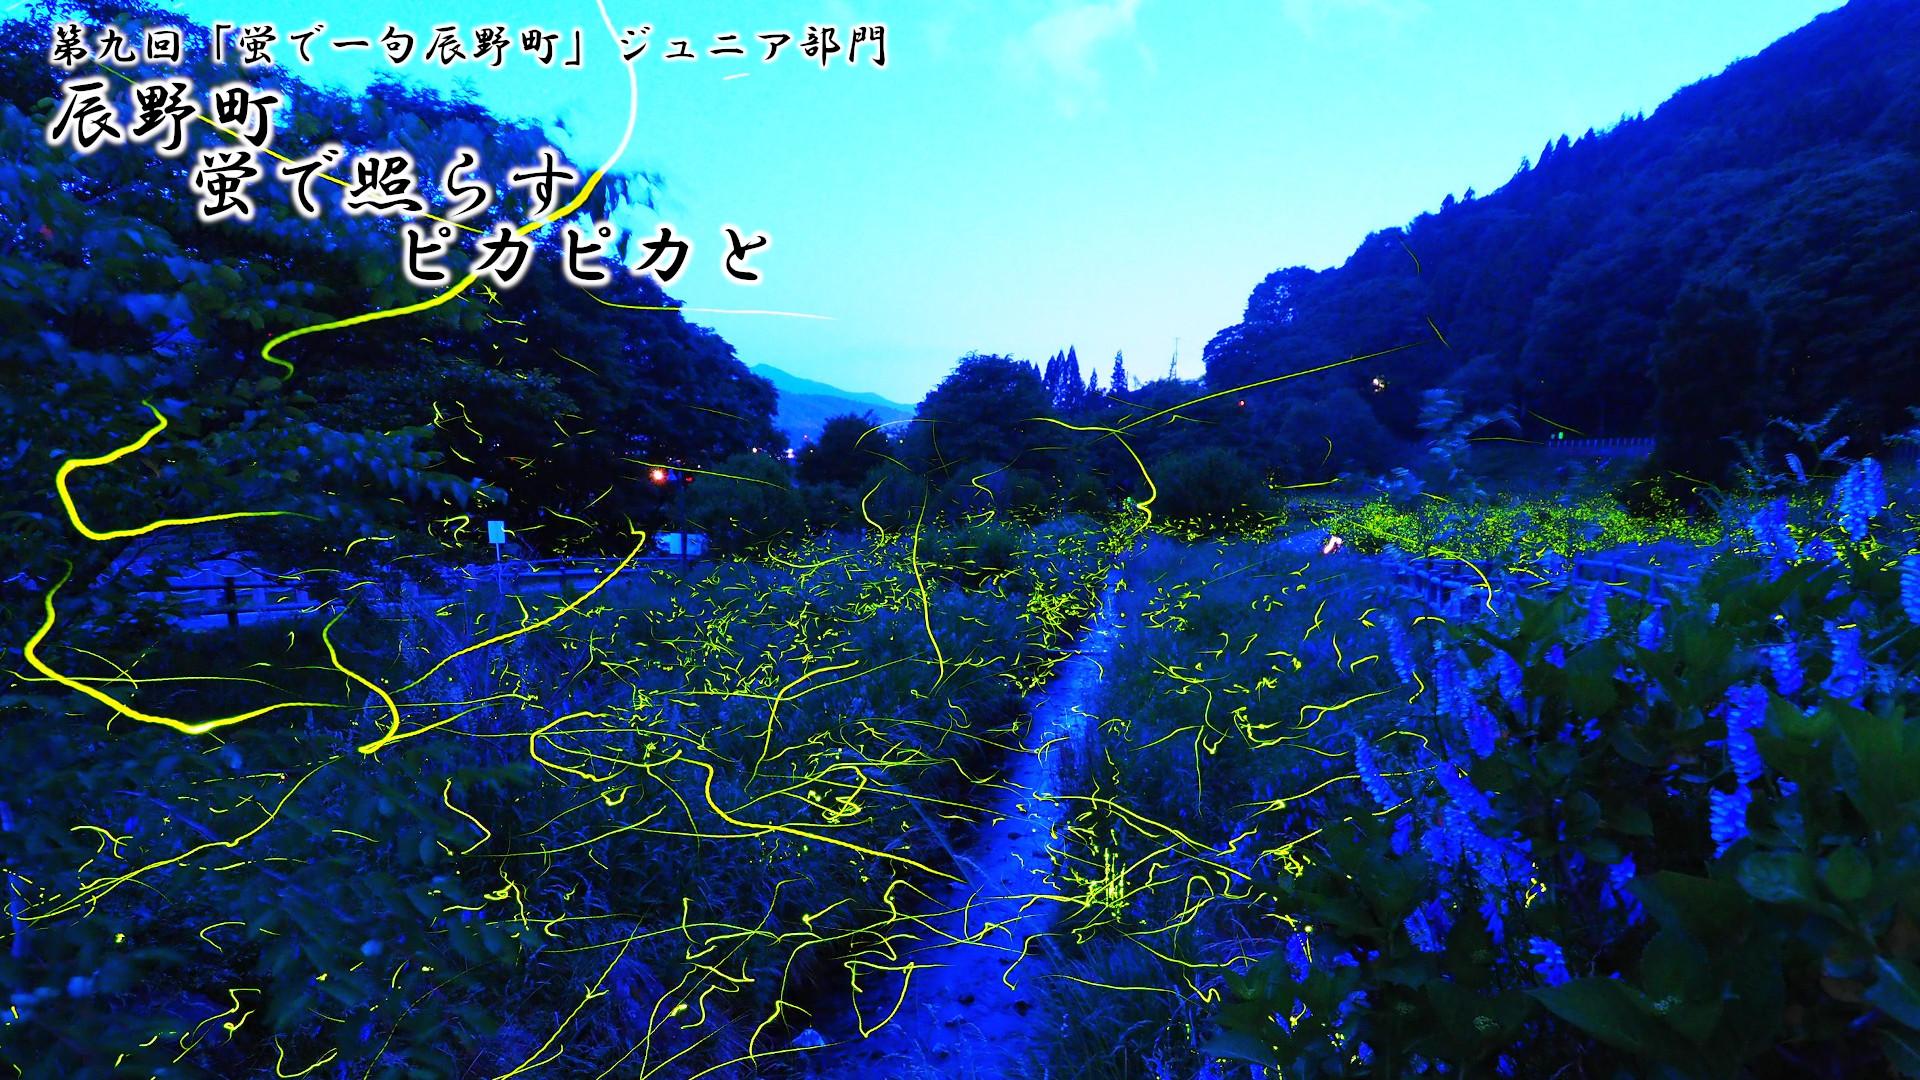 「辰野町 蛍で照らす ピカピカと」写真画像